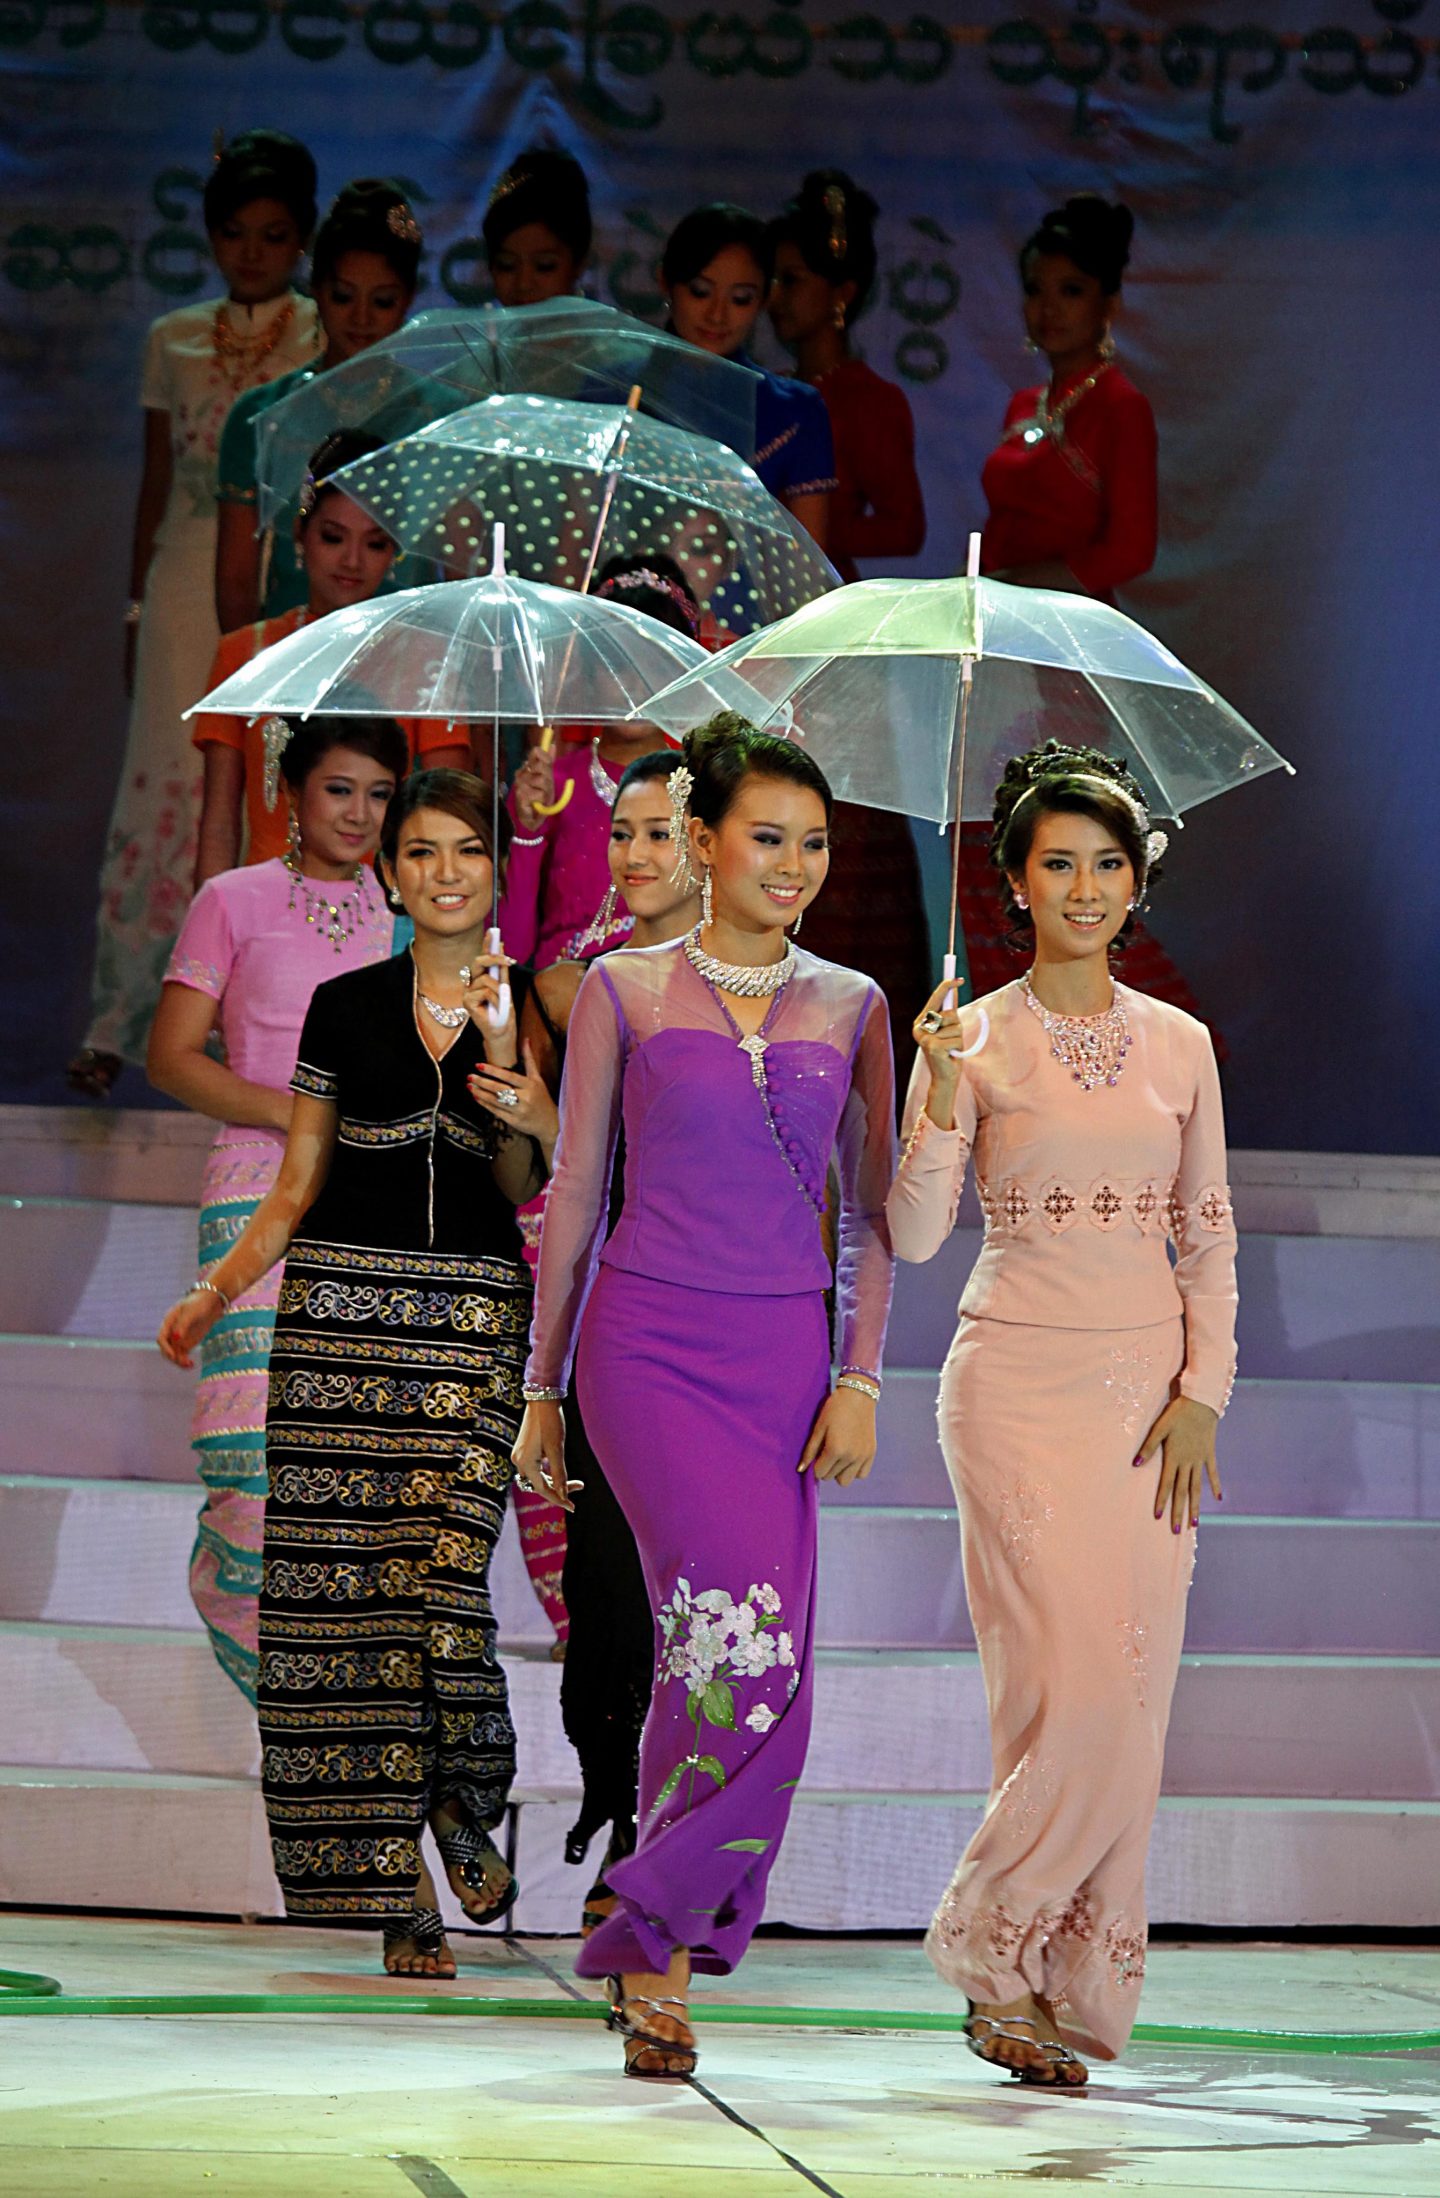 Women’s fashion in Myanmar